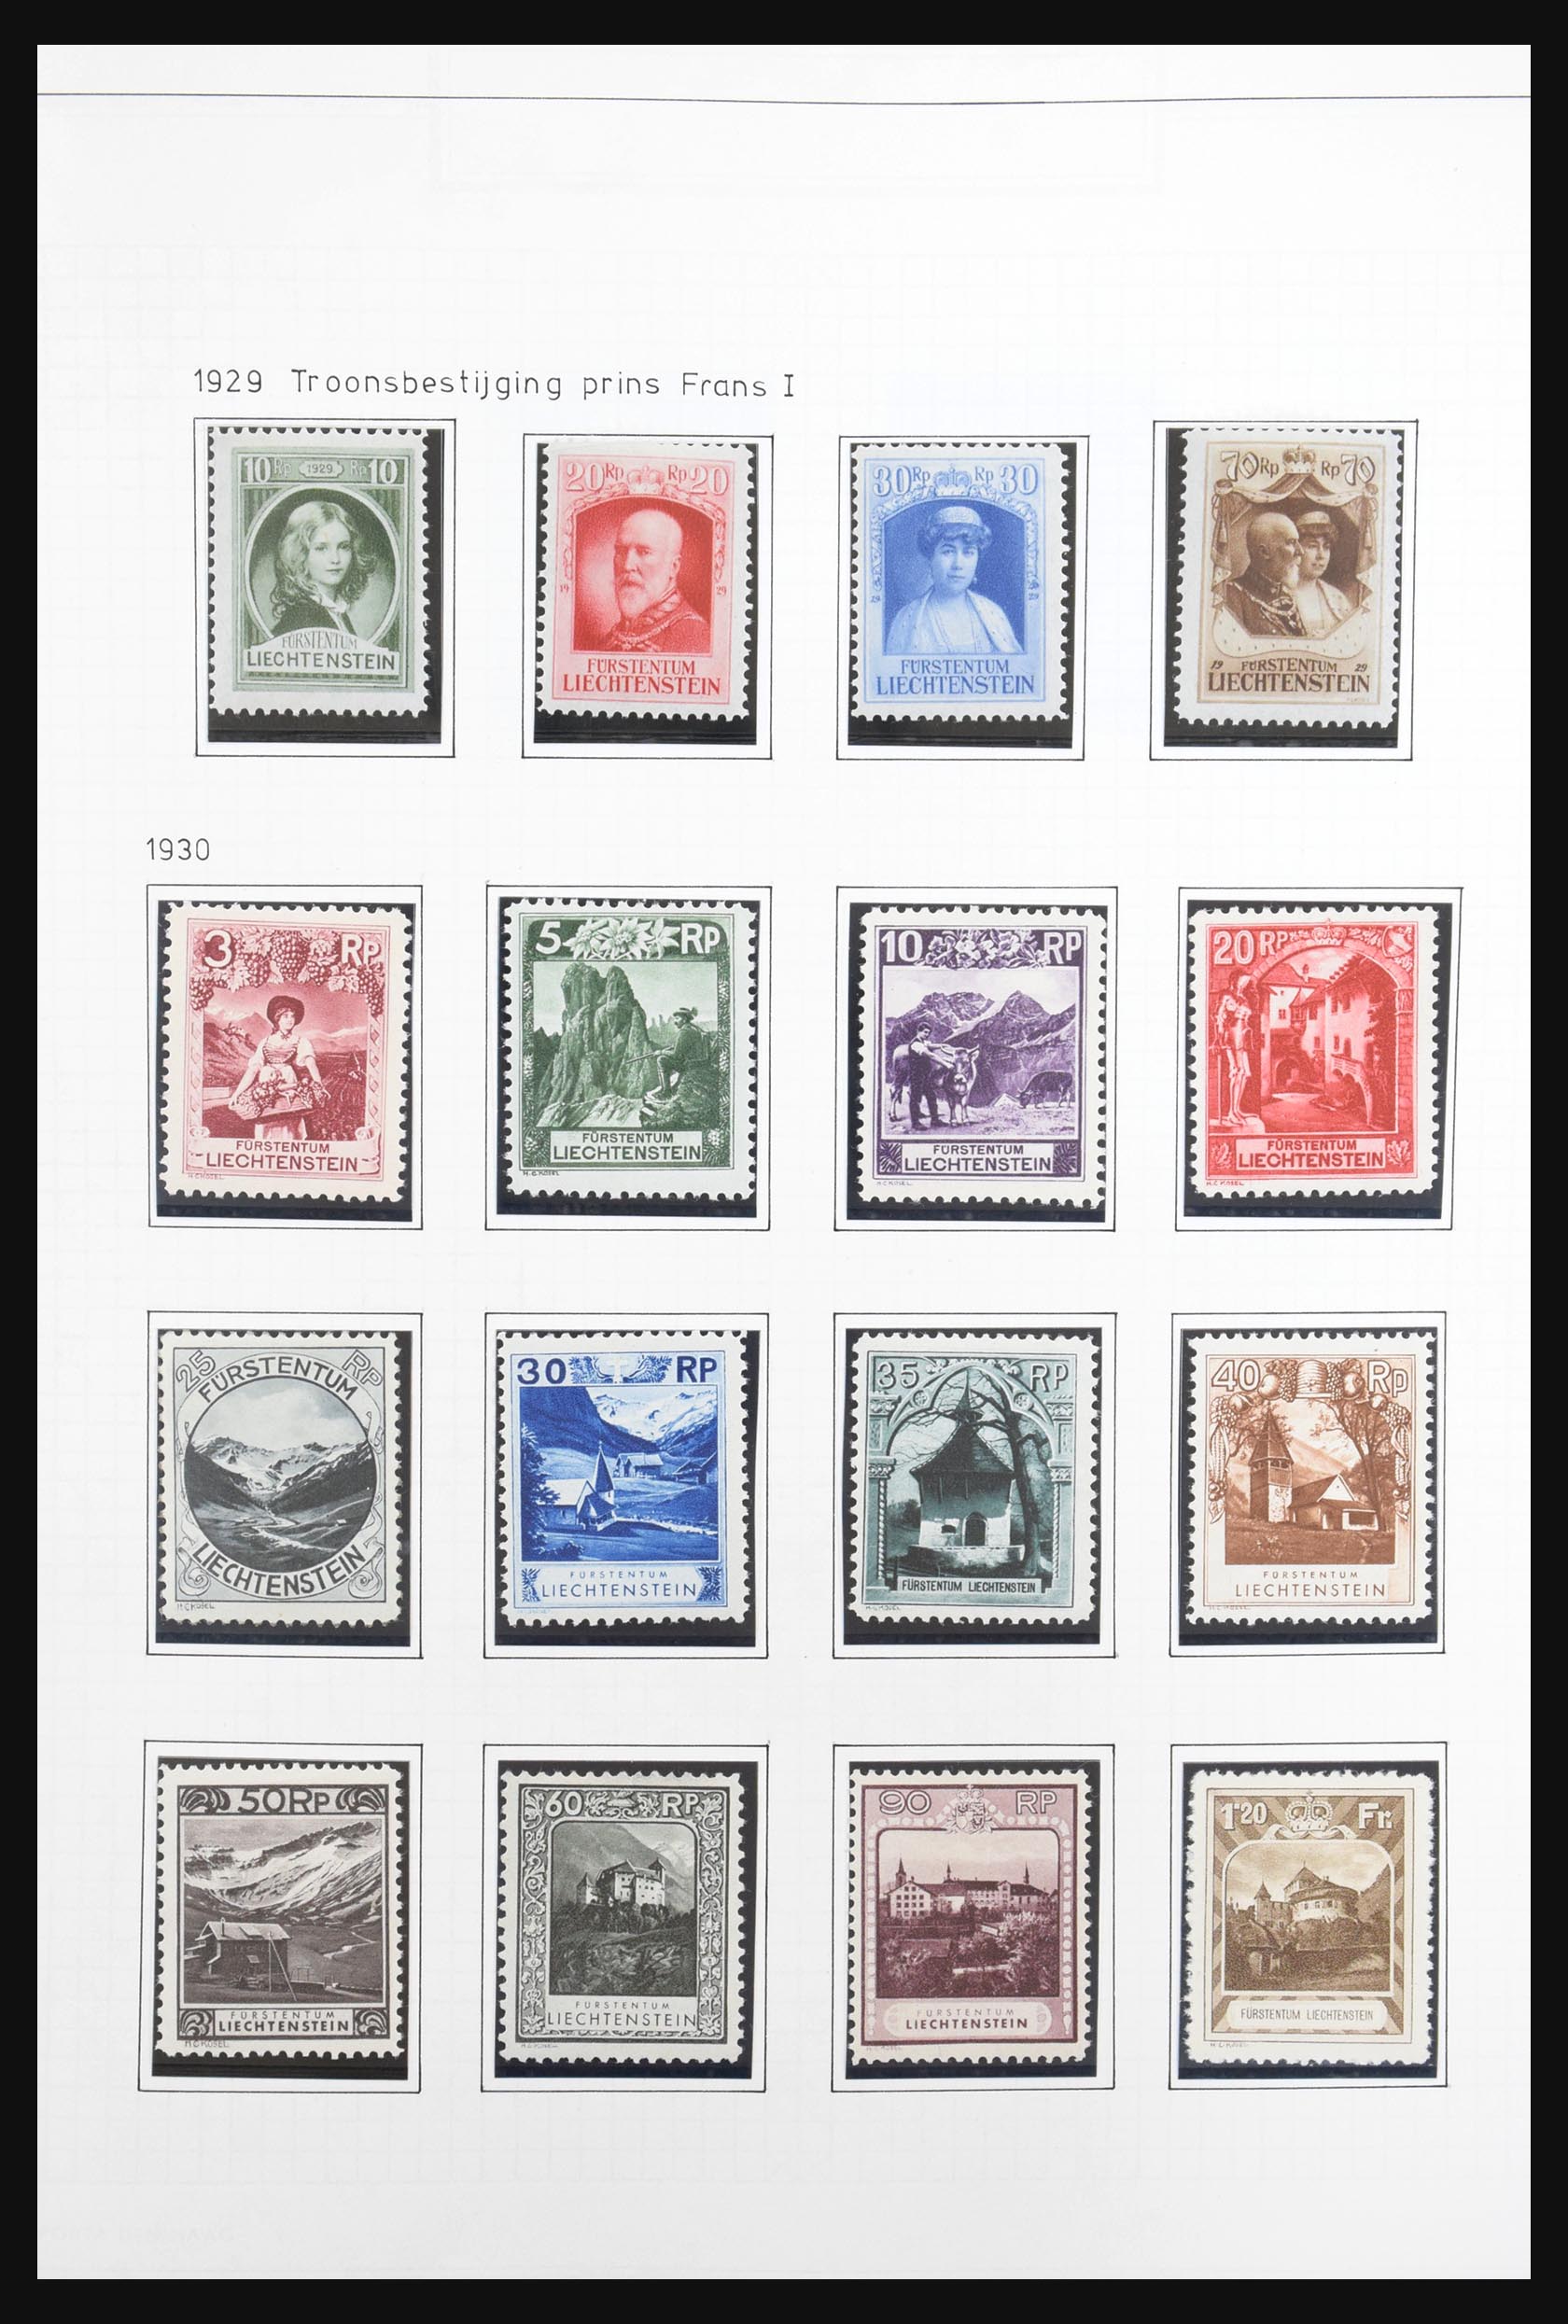 31131 008 - 31131 Liechtenstein 1912-2013.